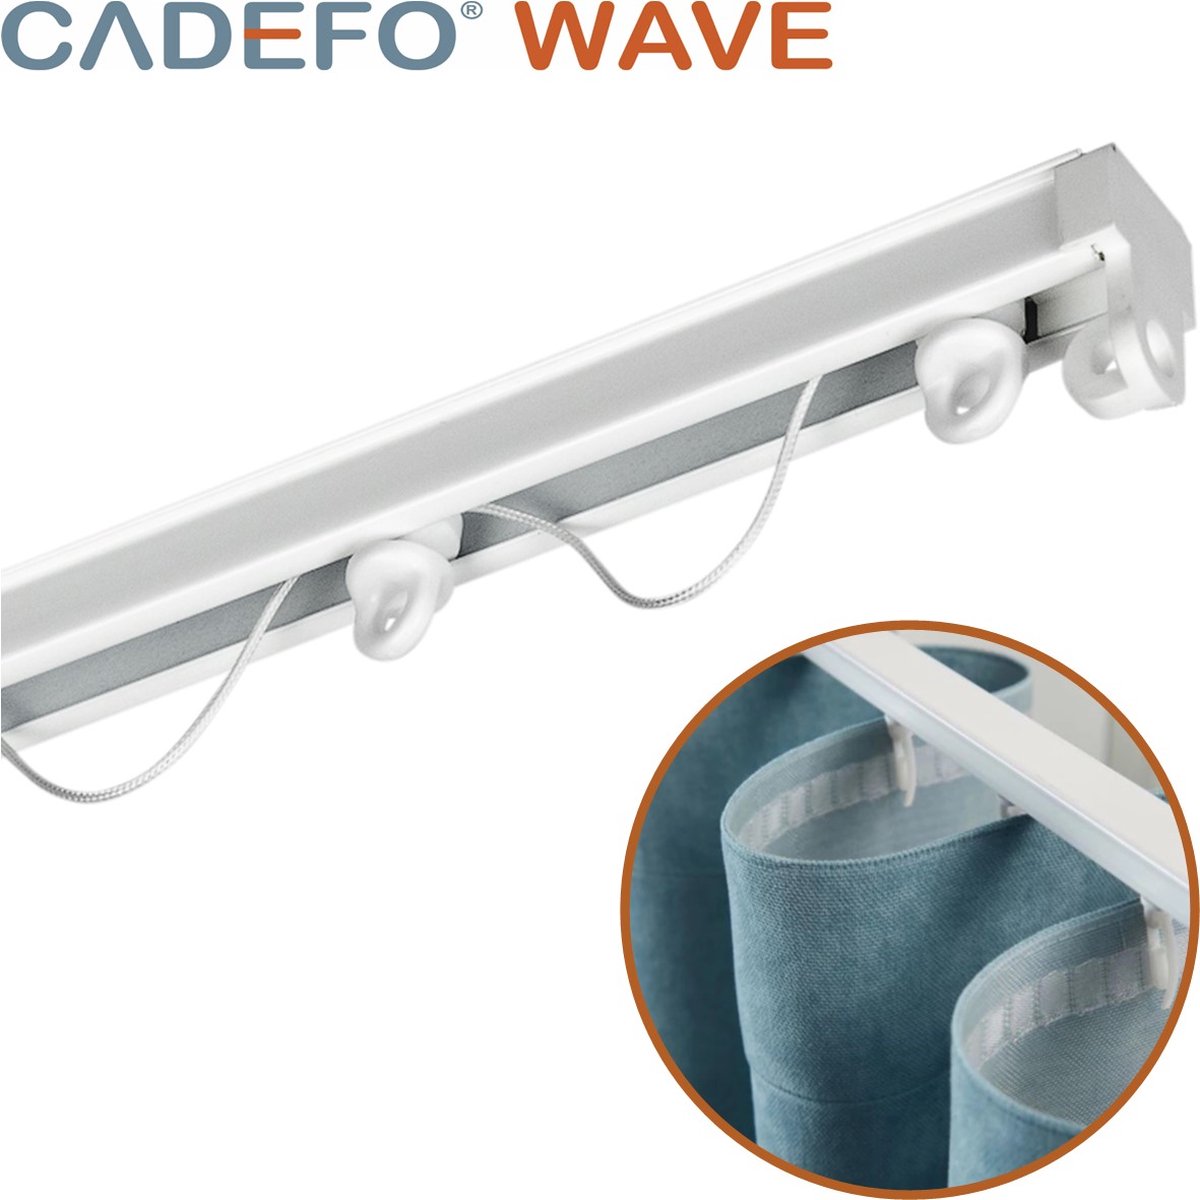 CADEFO WAVE (351 - 400 cm) Gordijnrails - Compleet op maat! - UIT 1 STUK - Leverbaar tot 6 meter - Plafondbevestiging - Lengte 391 cm